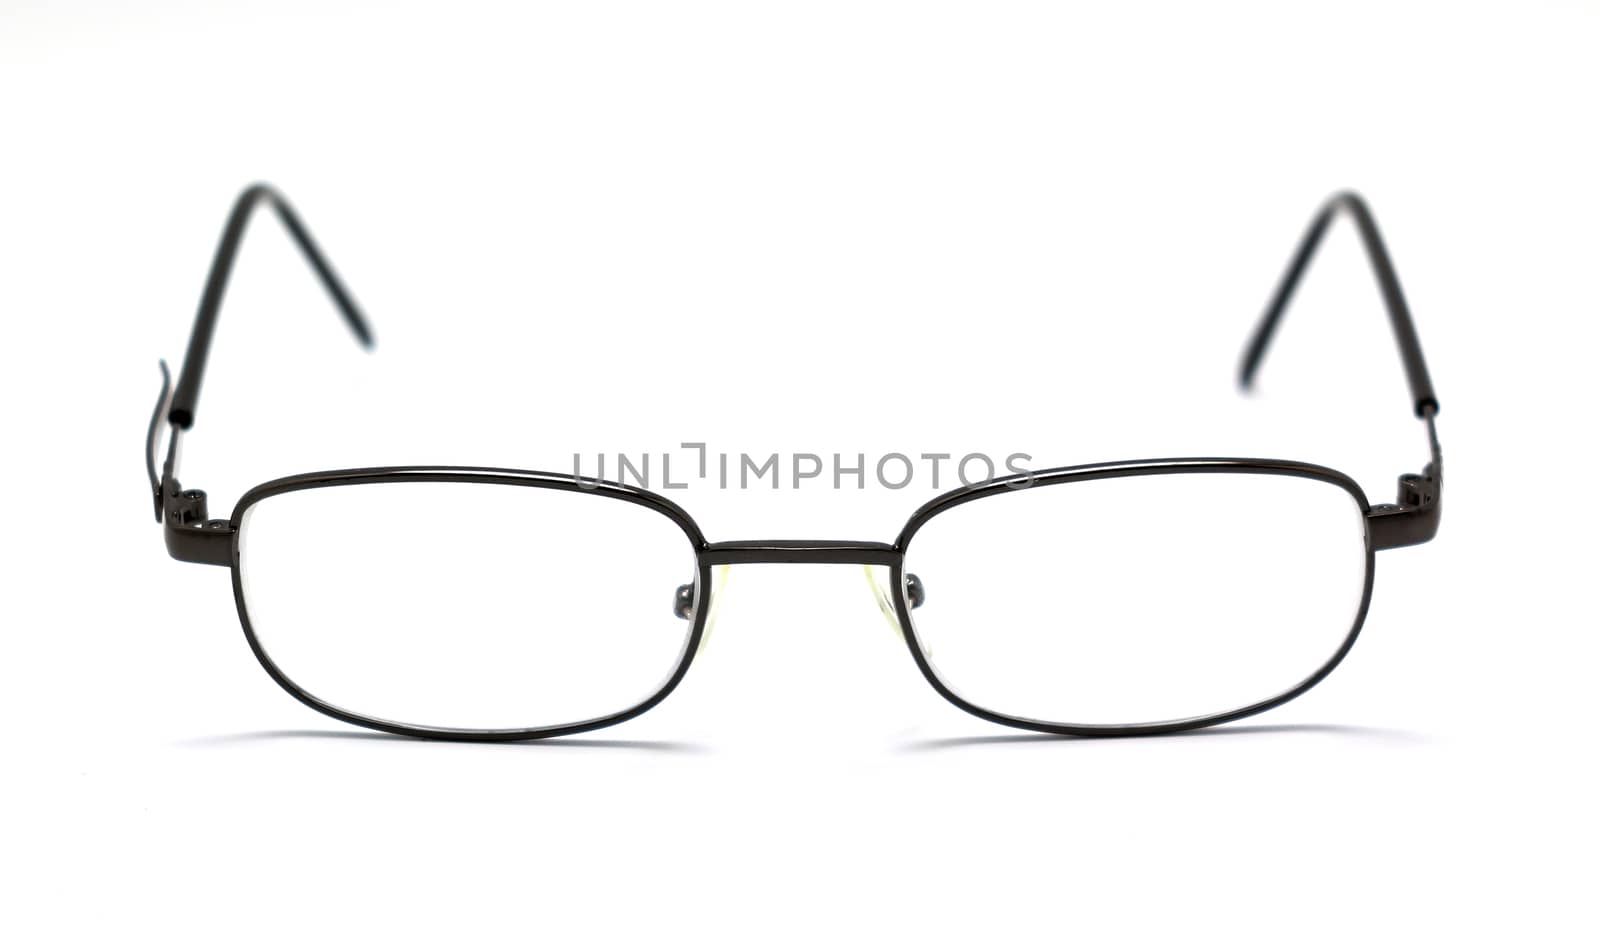 eye glasses isolated on white background